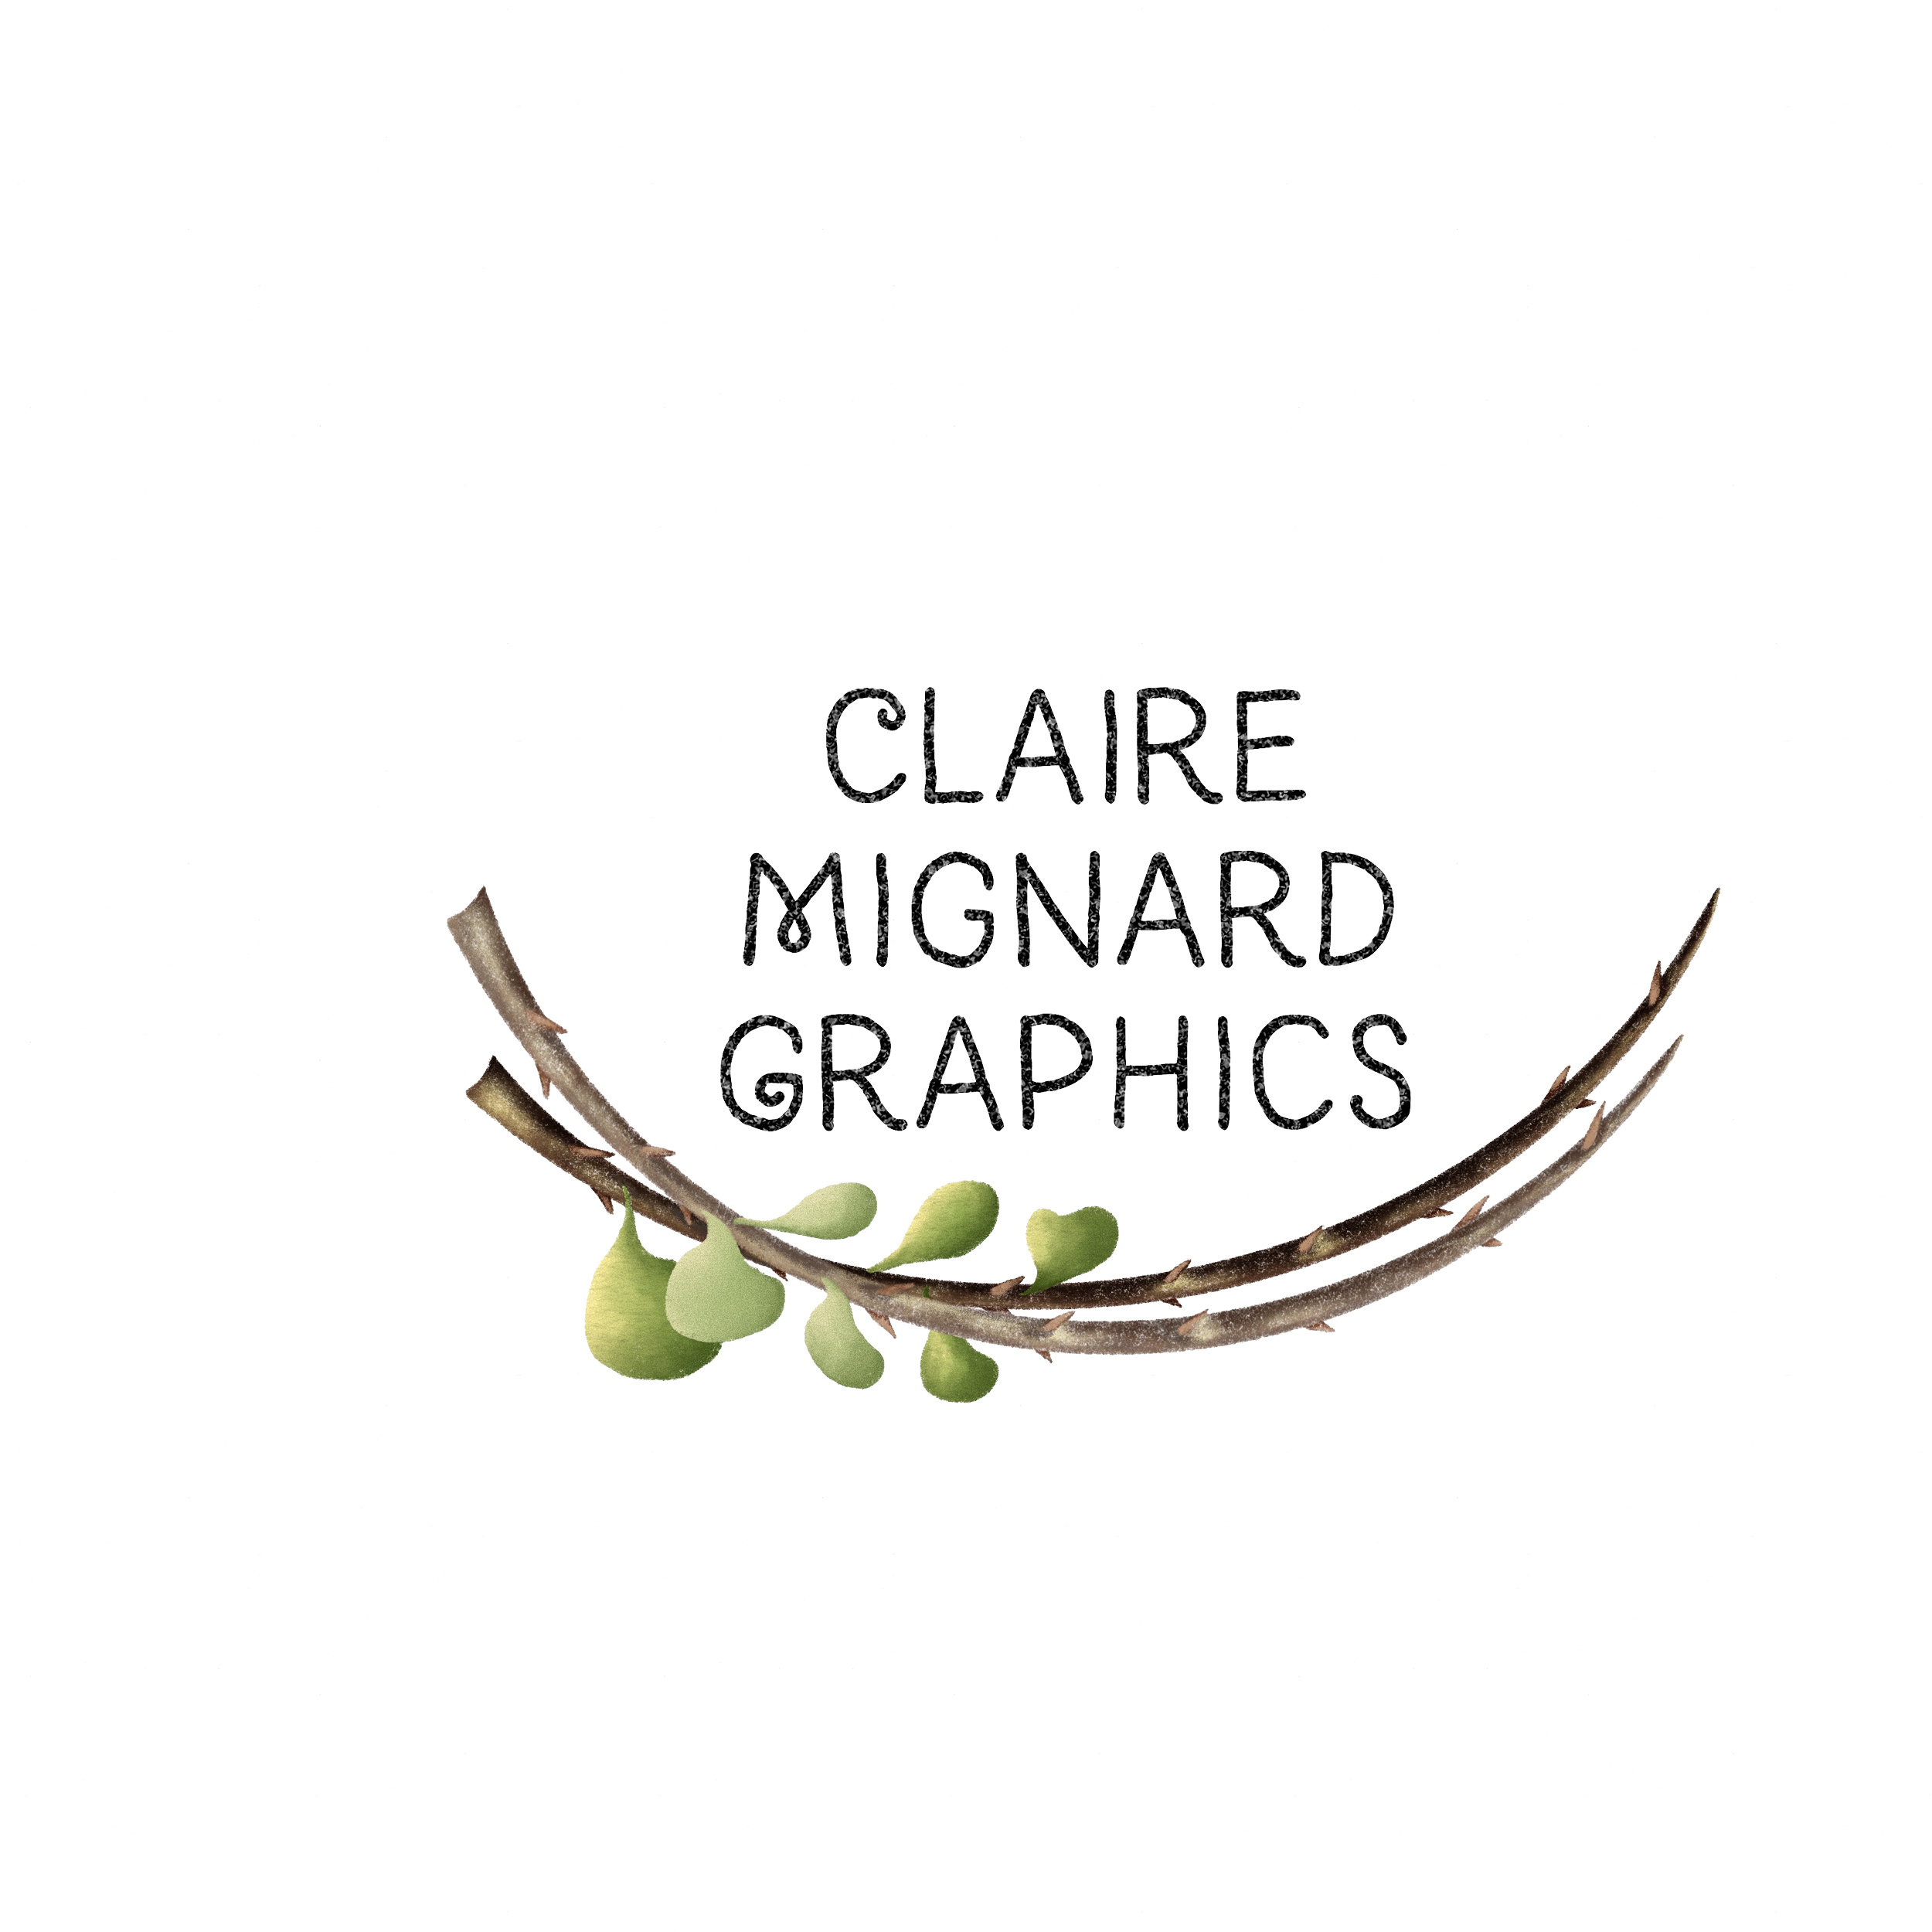 Claire Mignard's Portfolio